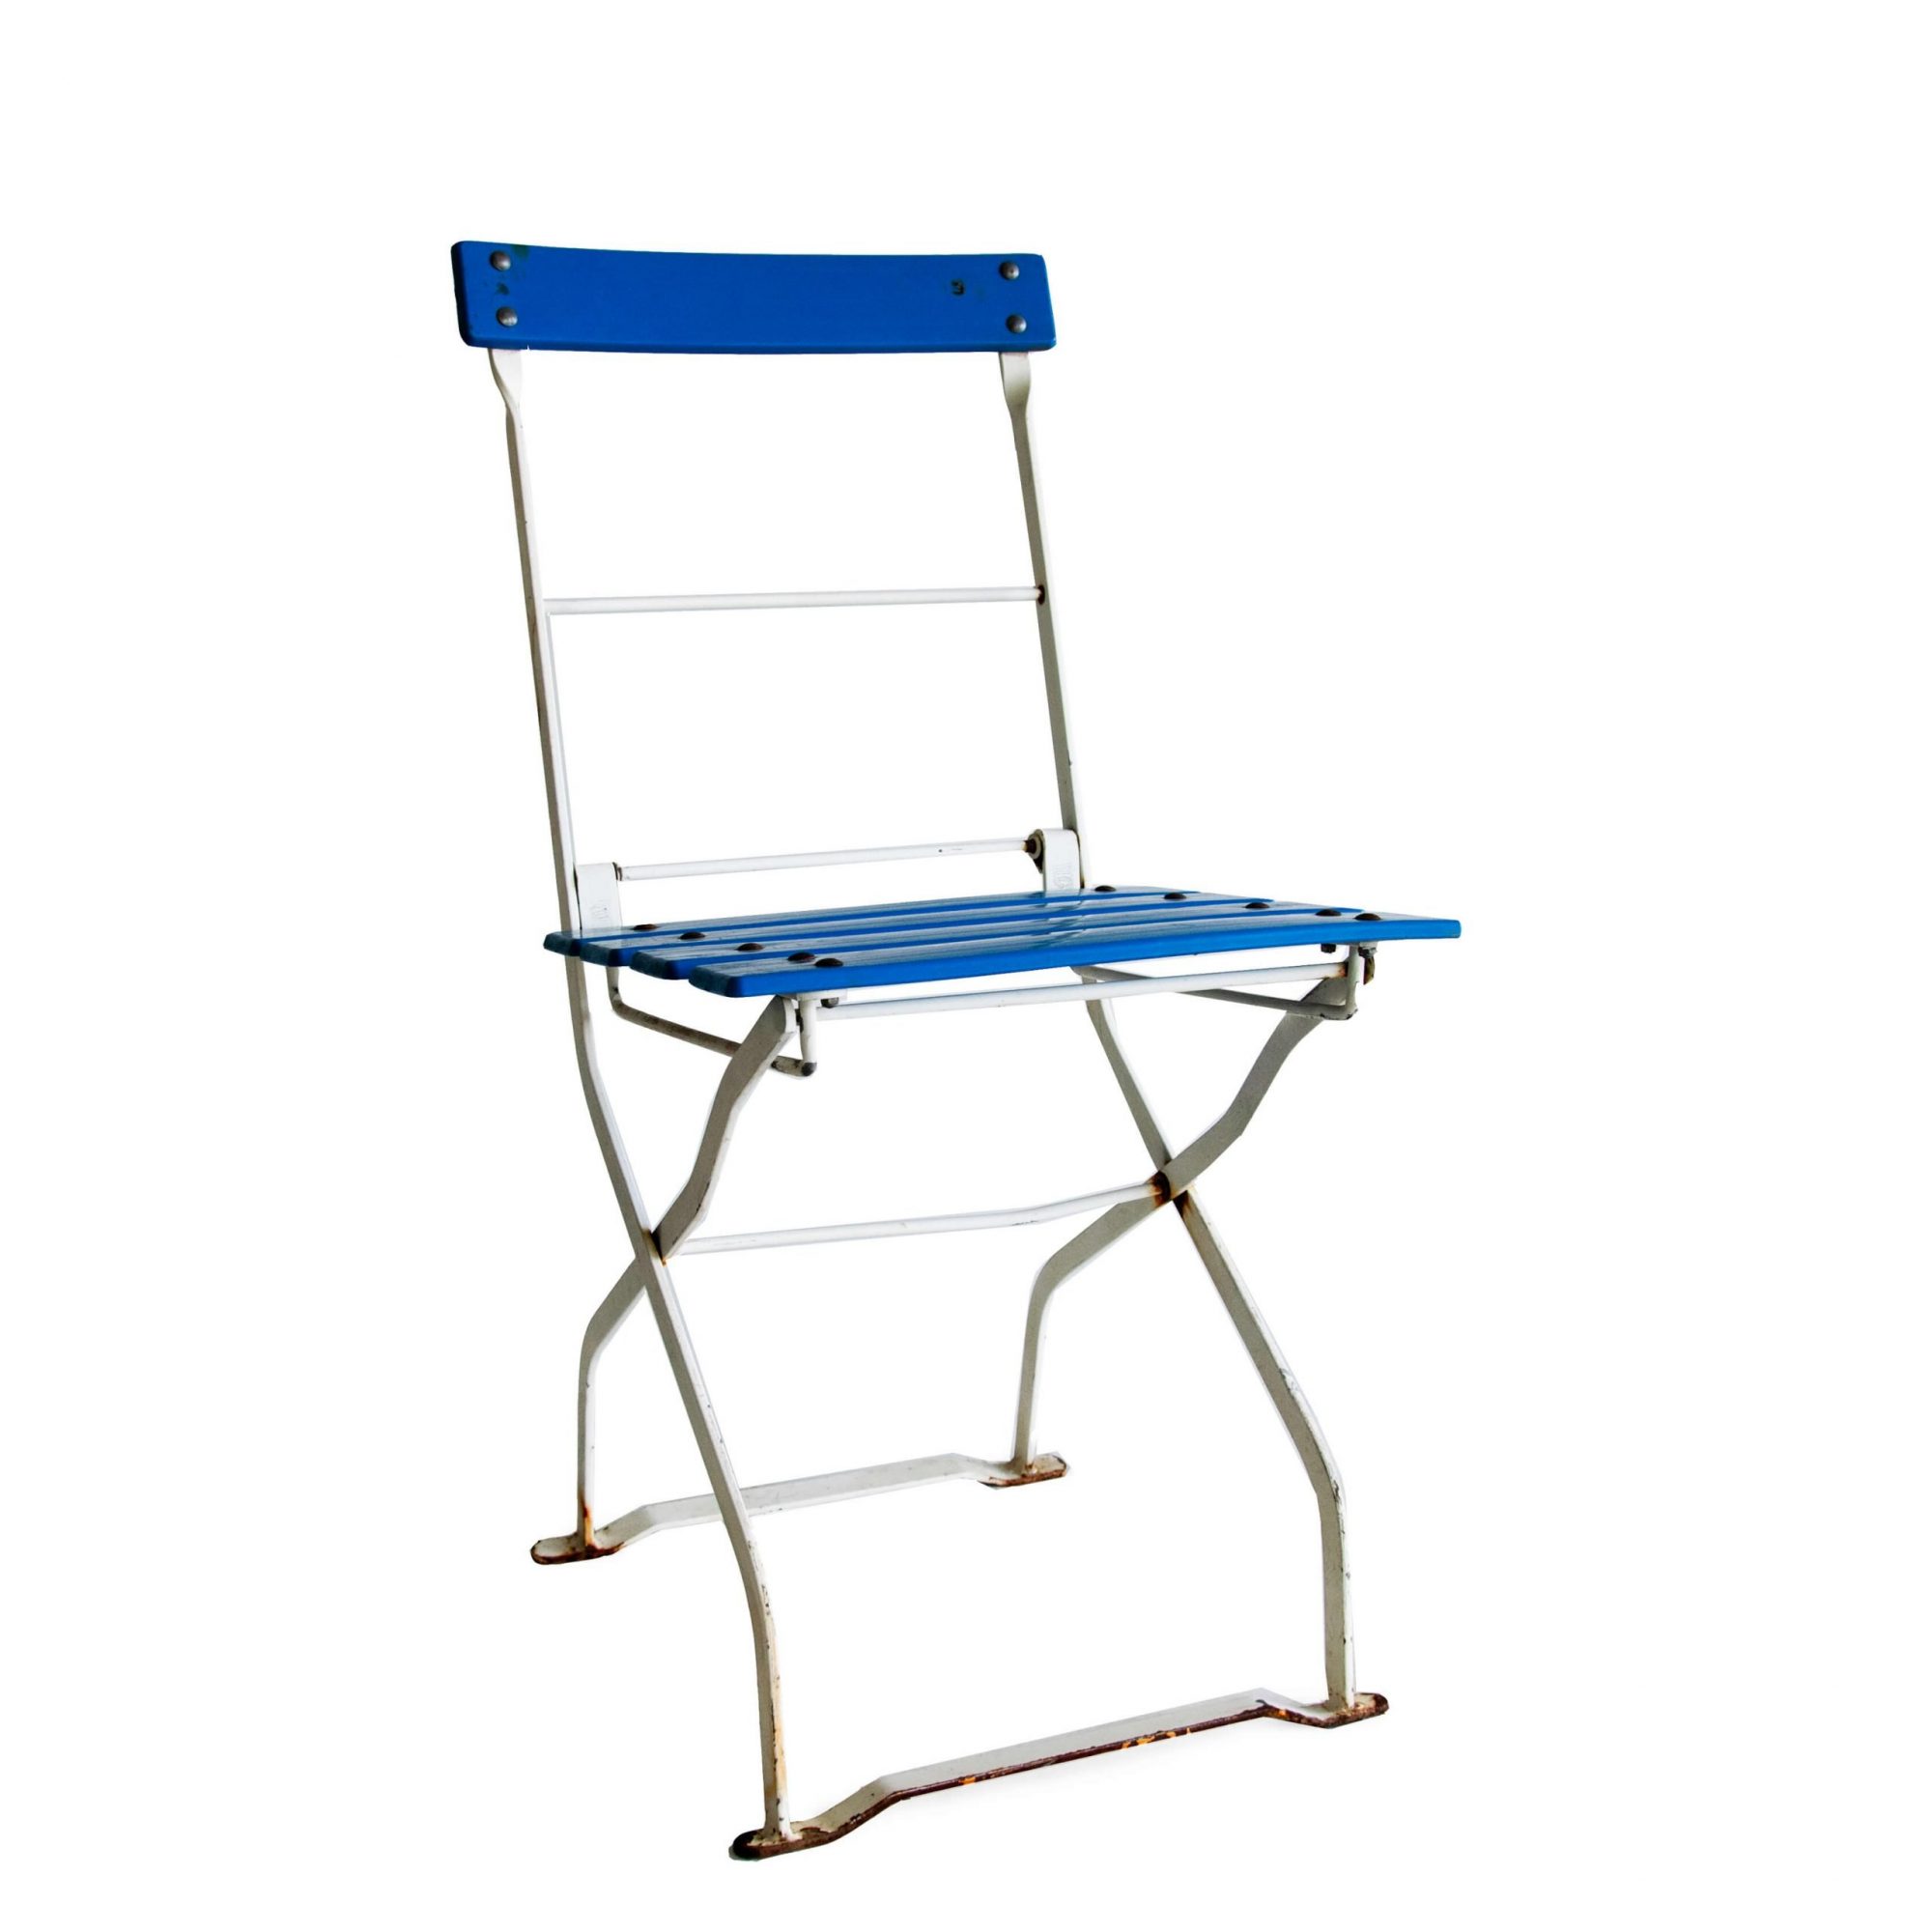 Geven Wet en regelgeving Gymnast Retro jaren 70 terras klapstoelen, vintage stoel blauw - Super Seat